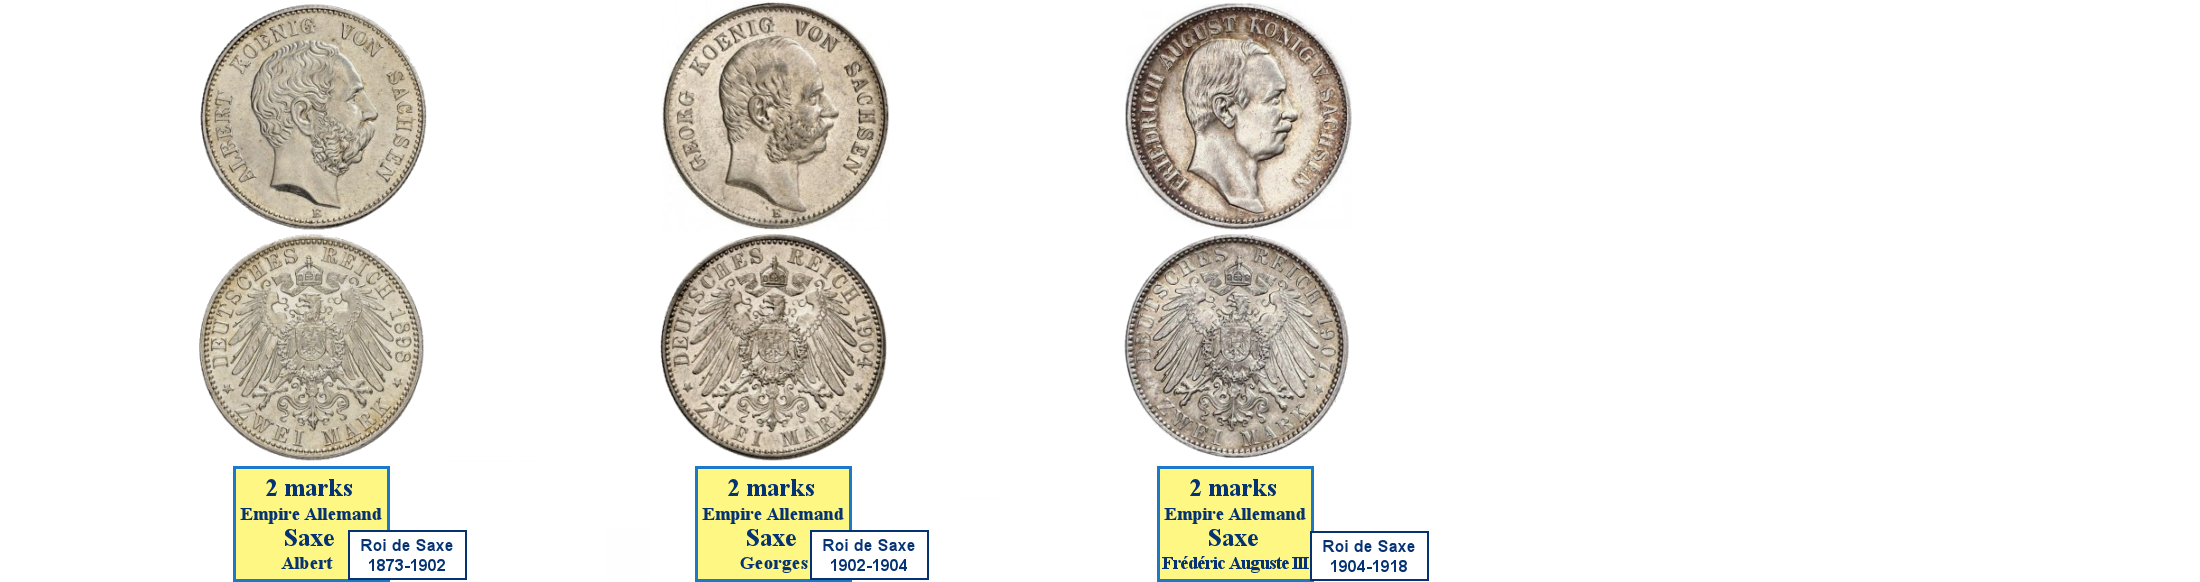 Photos de pièces de monnaies du Royaume de Saxe dans l'Empire Allemand